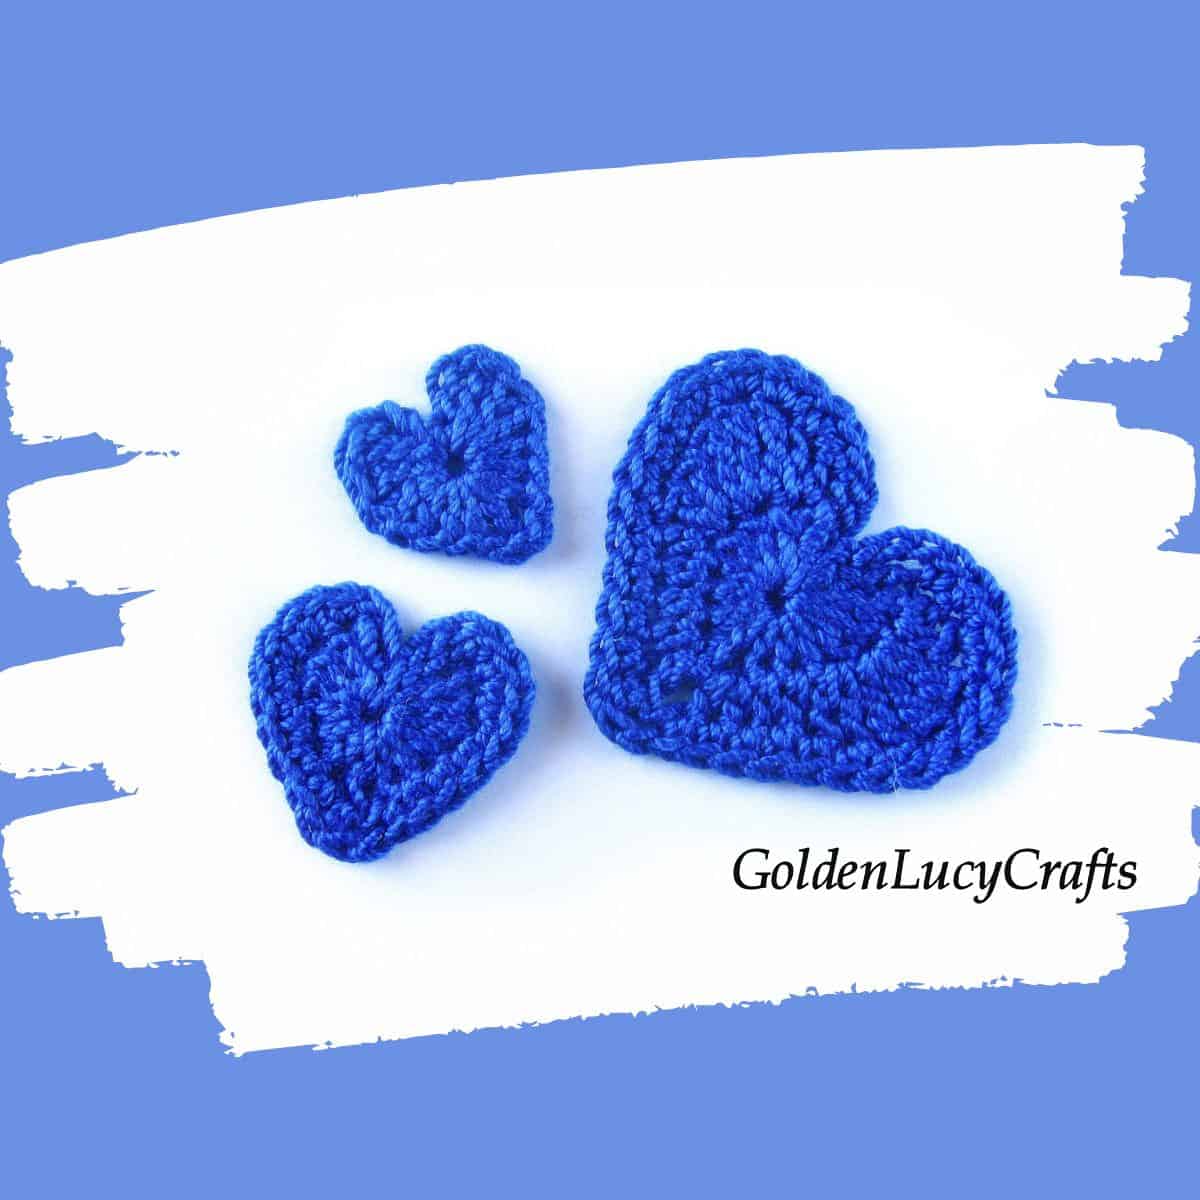 Crochet three blue hearts.